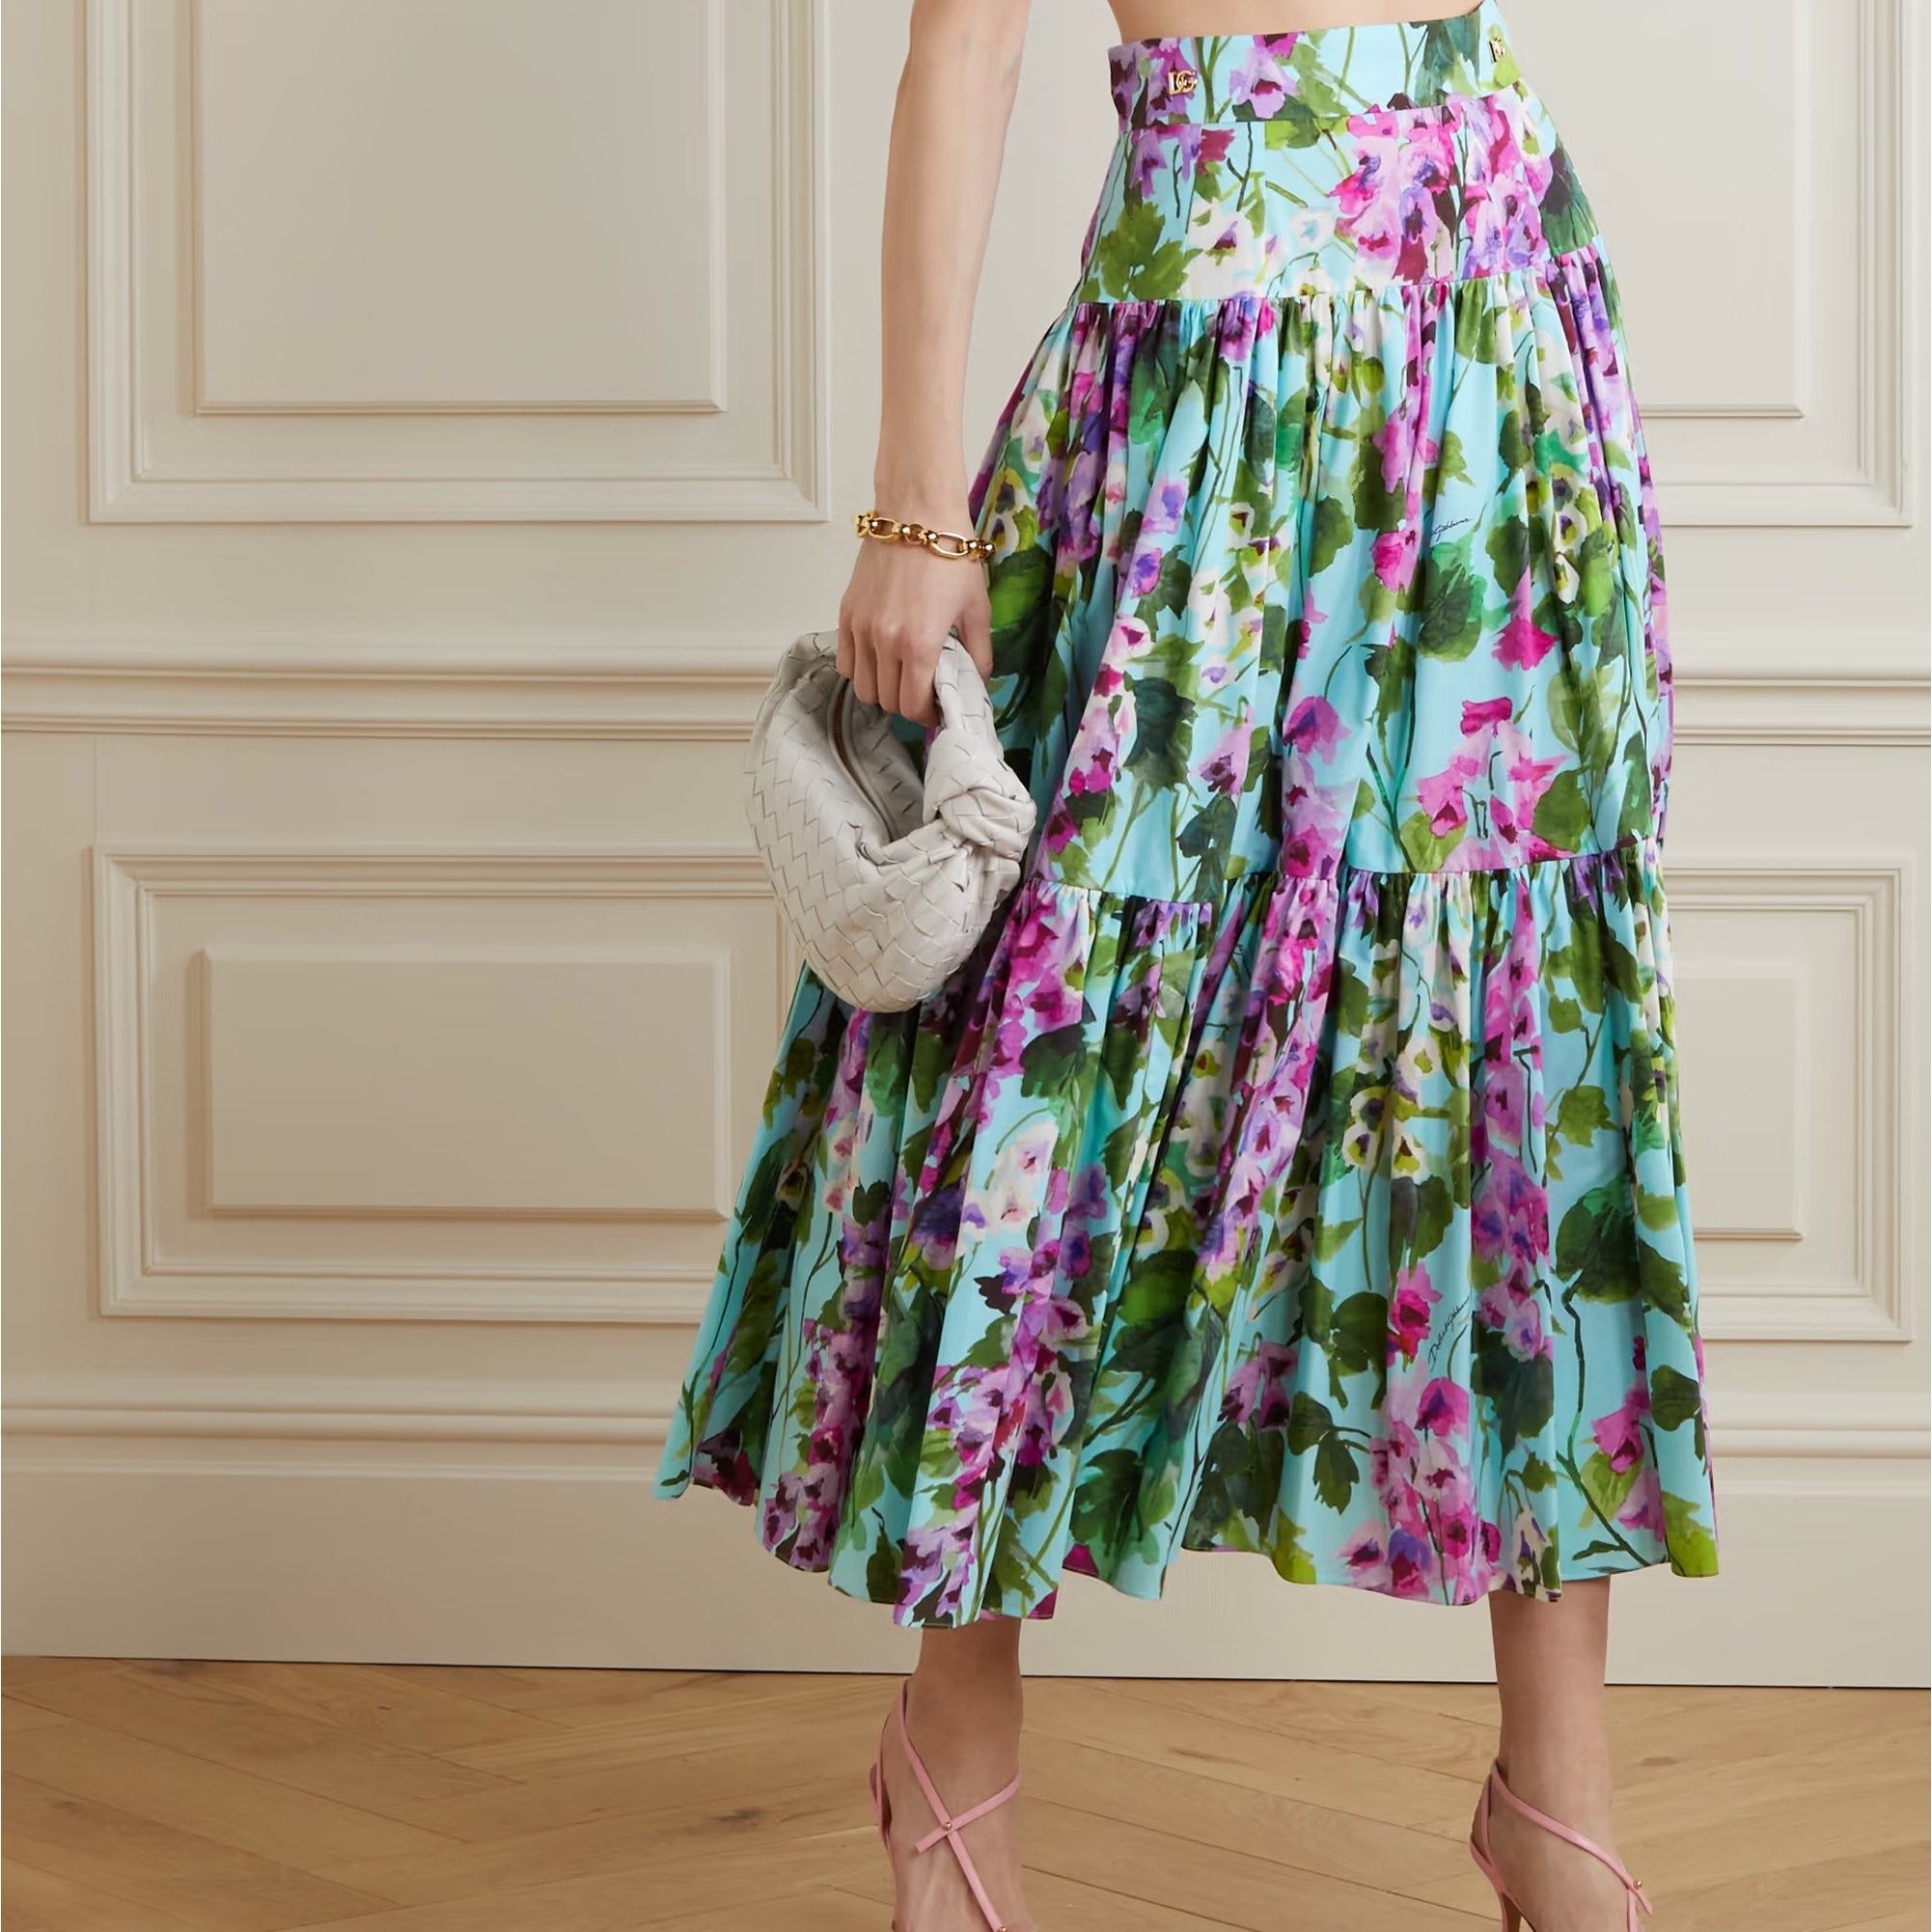 2. Модные платья 2023: Цветы на корсаже